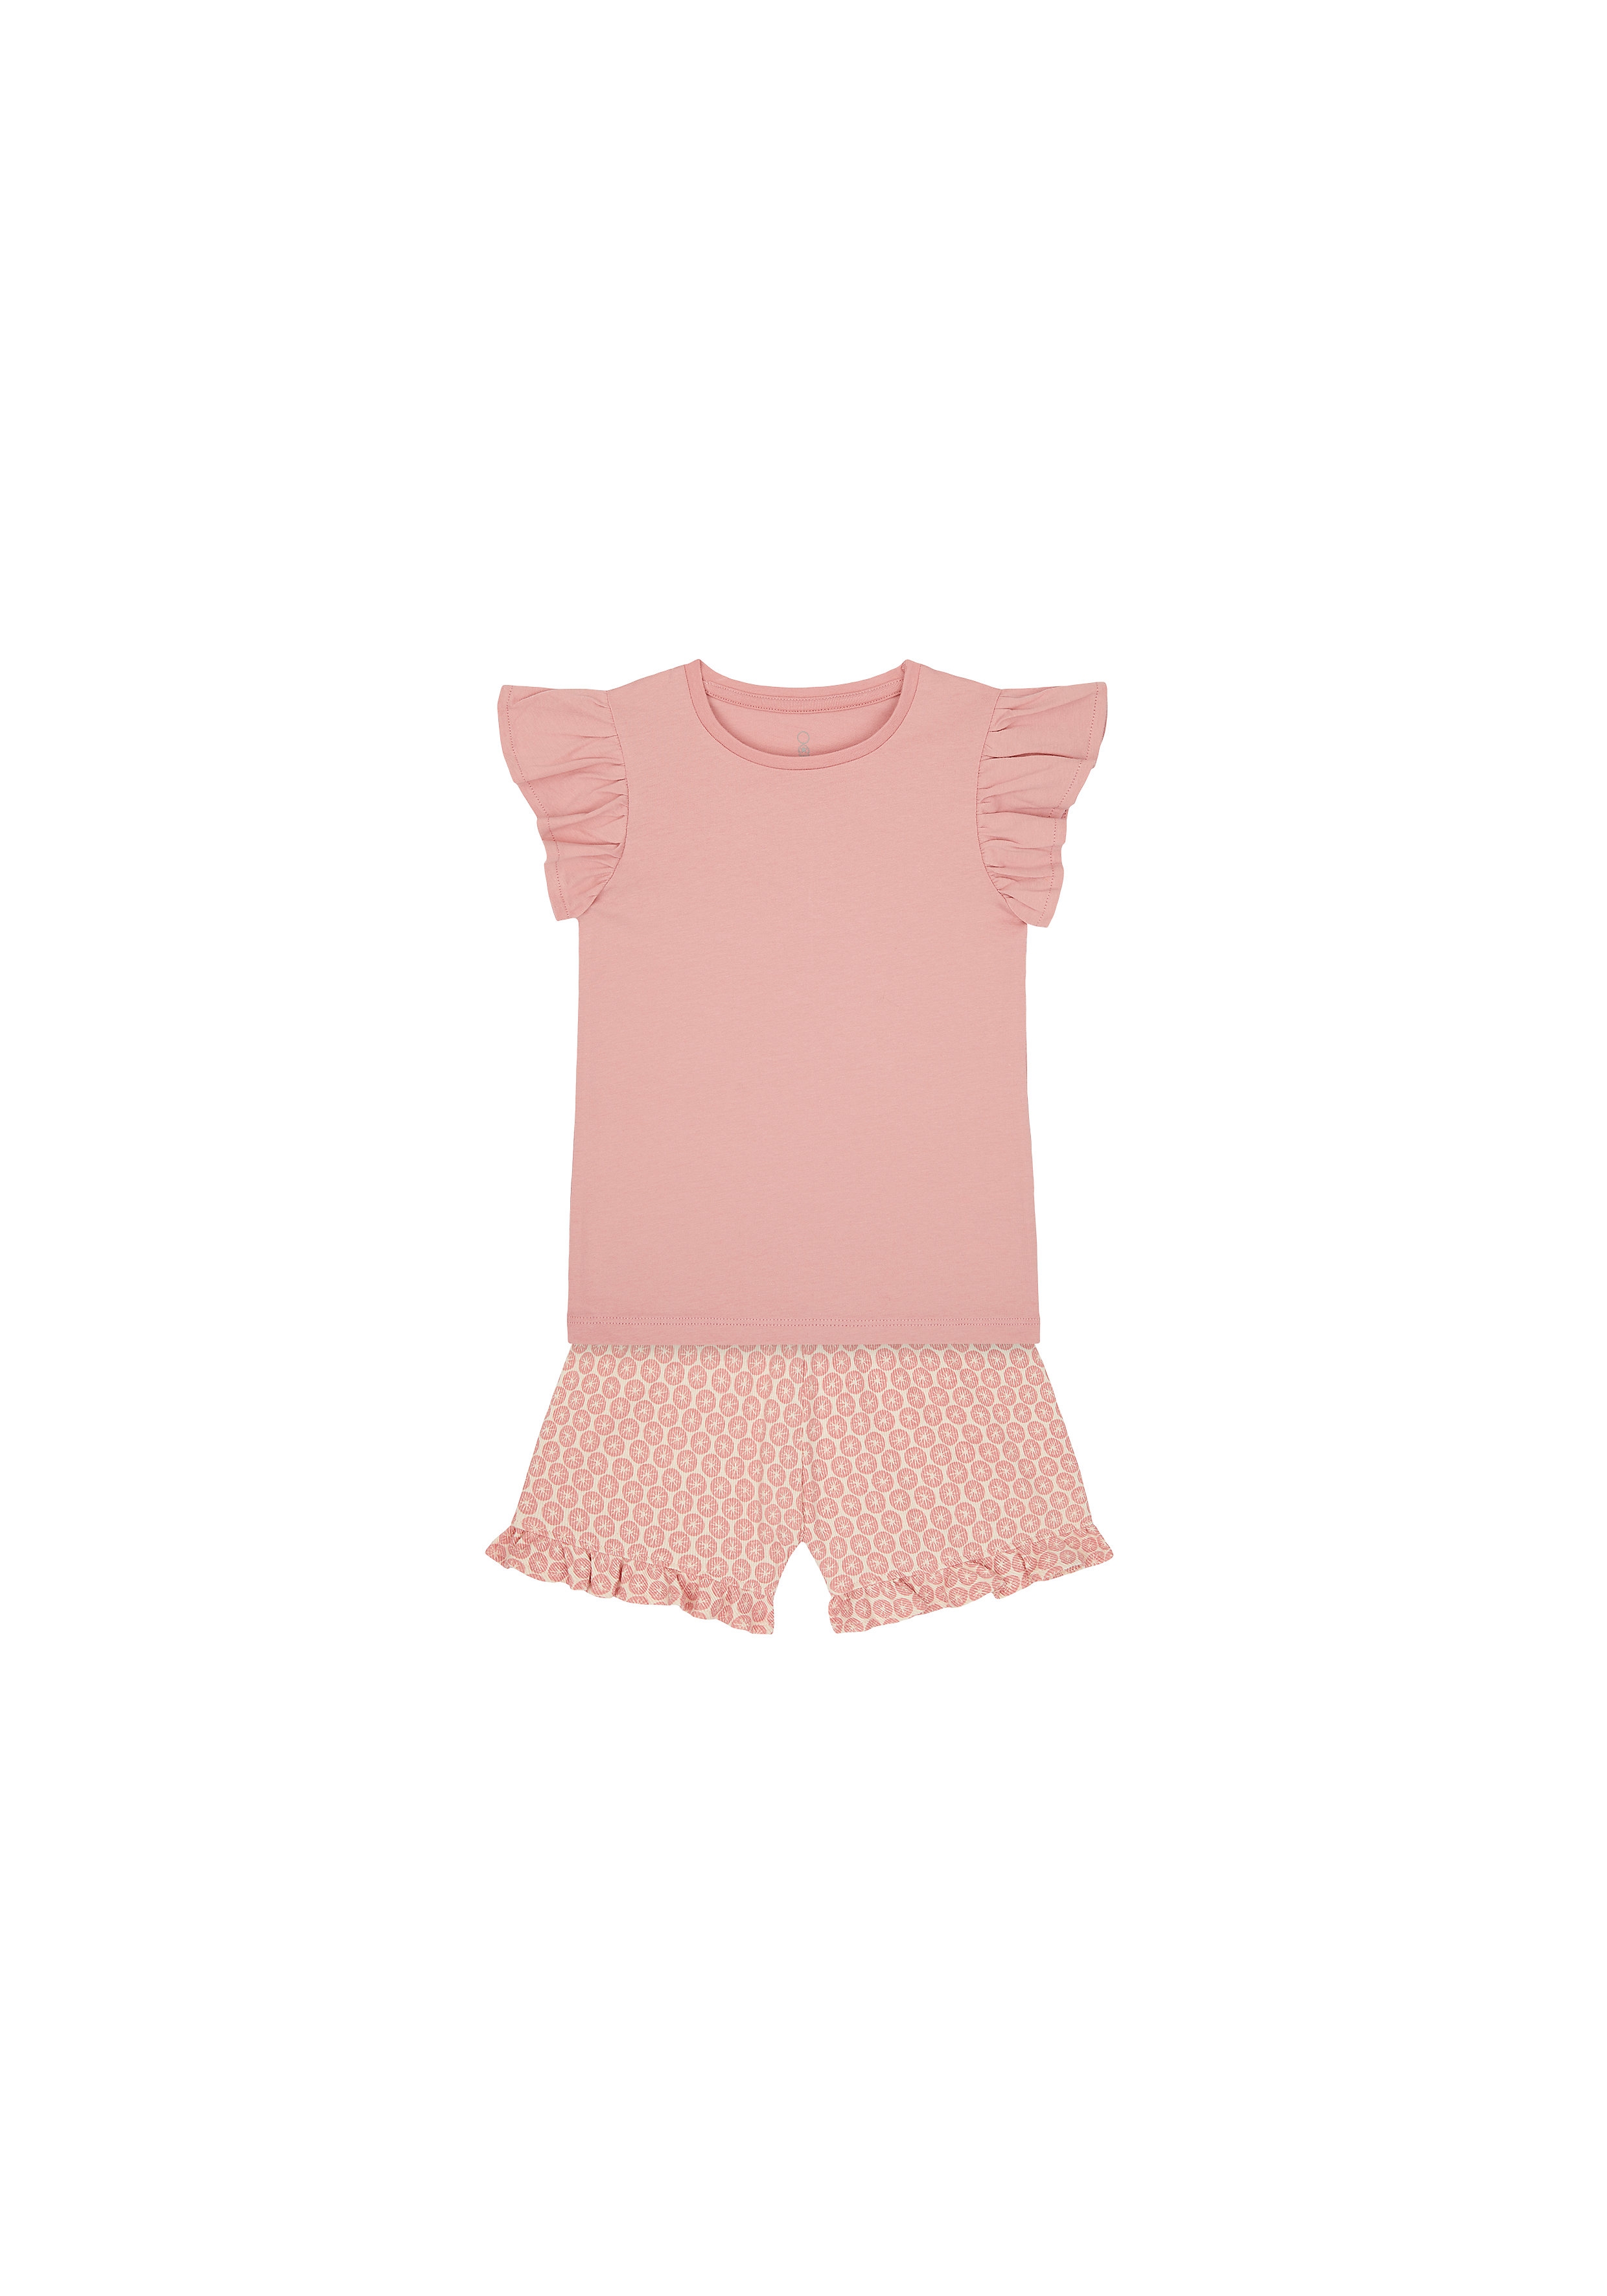 Mothercare | Girls Half Sleeves T-Shirt And Shorts Set Printed - Pink